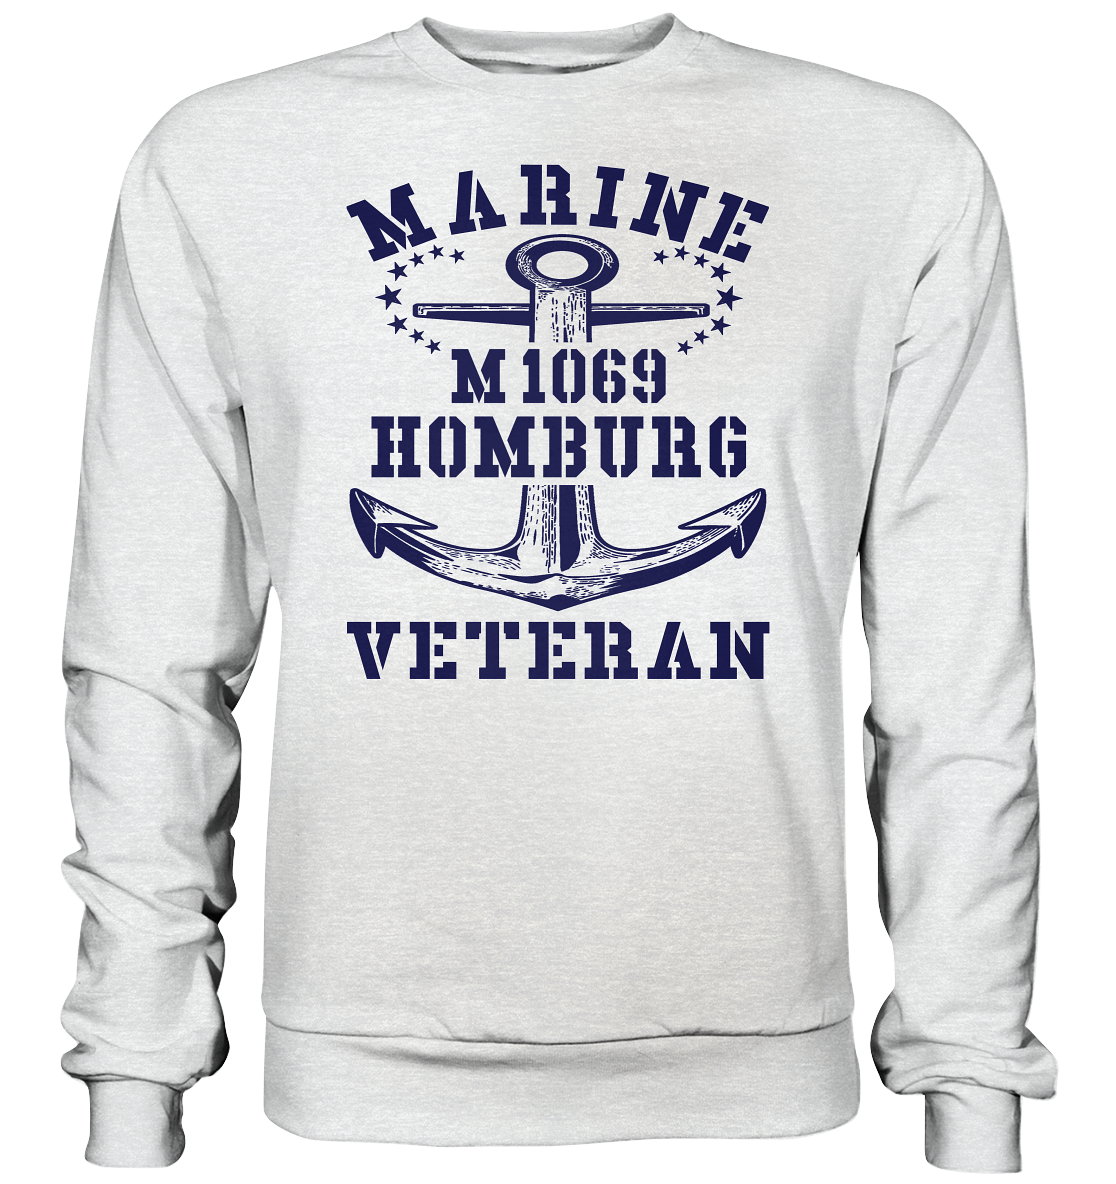 Mij.-Boot M1069 HOMBURG Marine Veteran - Premium Sweatshirt